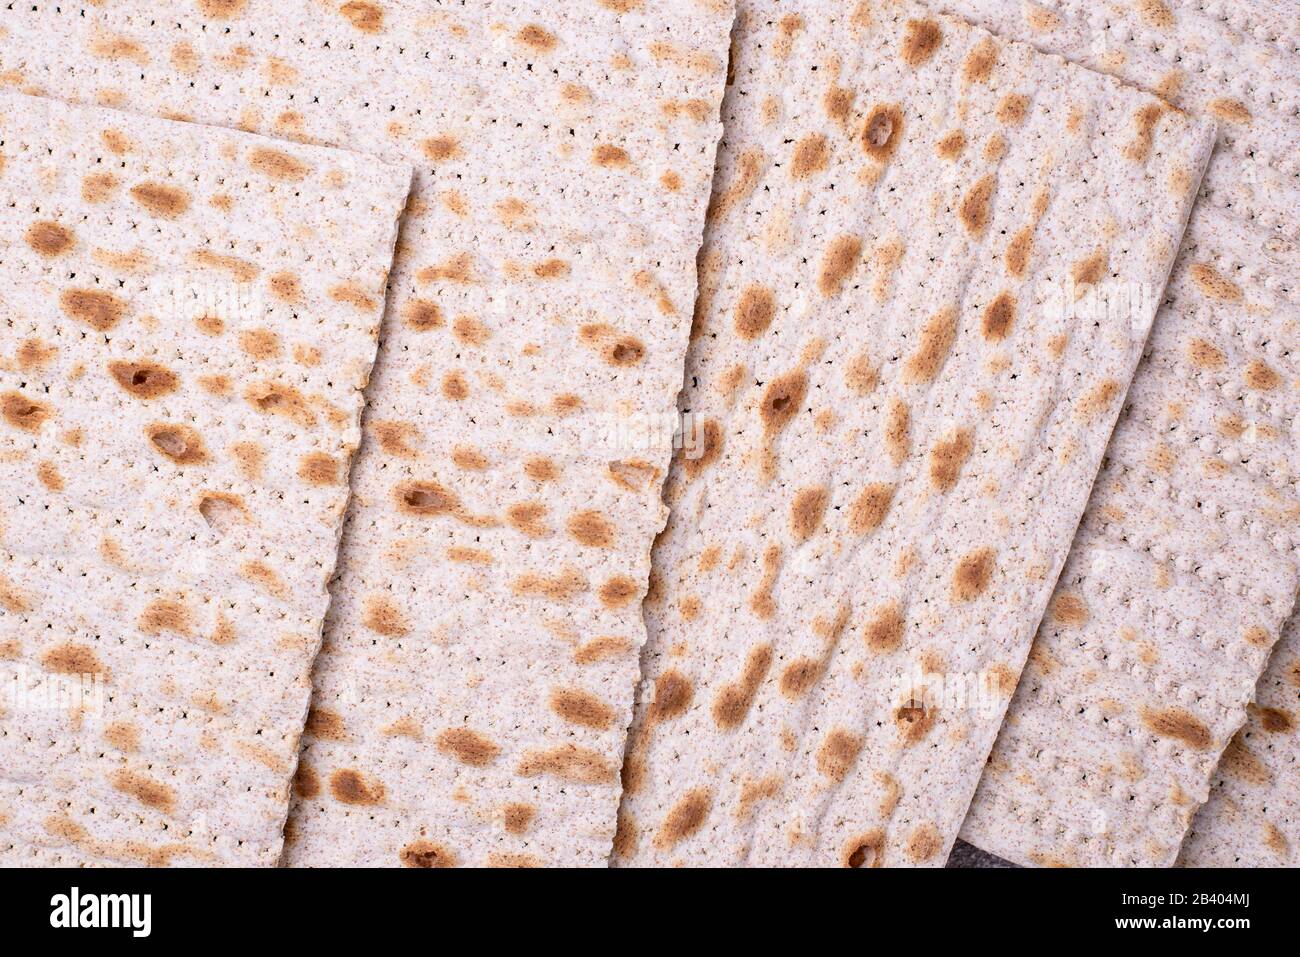 Pain juif traditionnel rituel matzah Banque D'Images